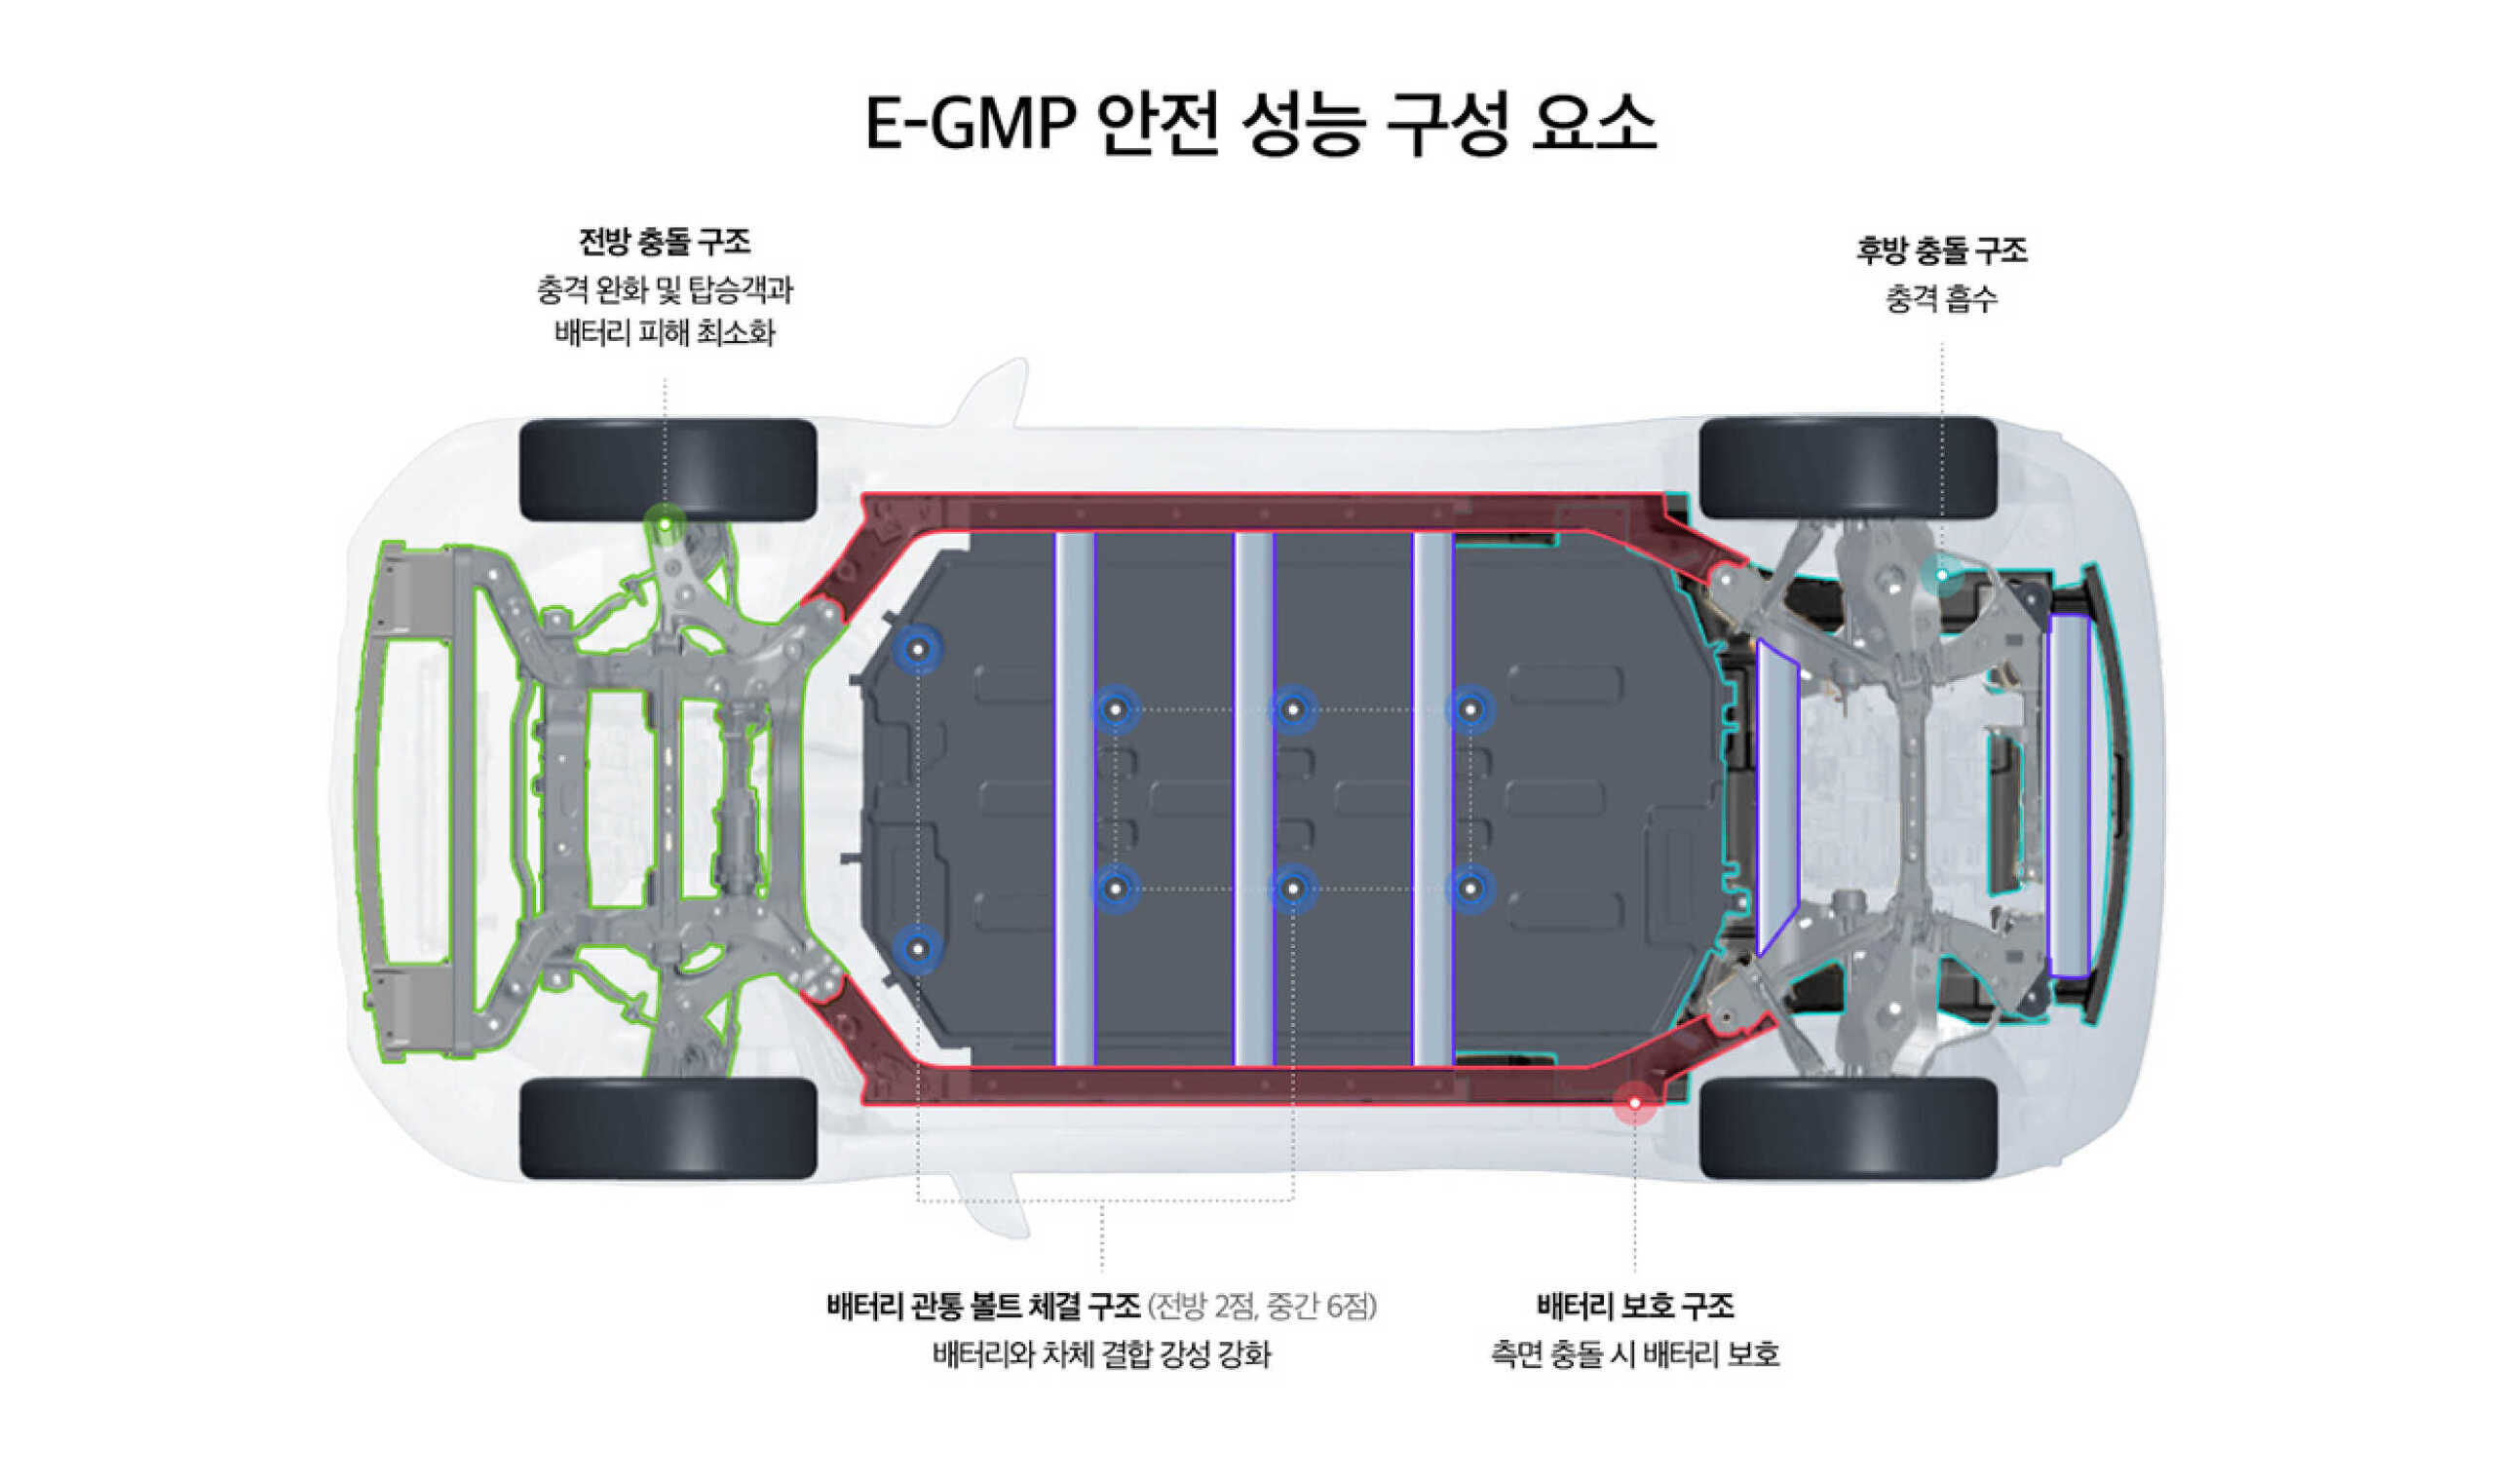 현대자동차그룹 E-GMP의 충돌 안전 구조를 설명하는 표